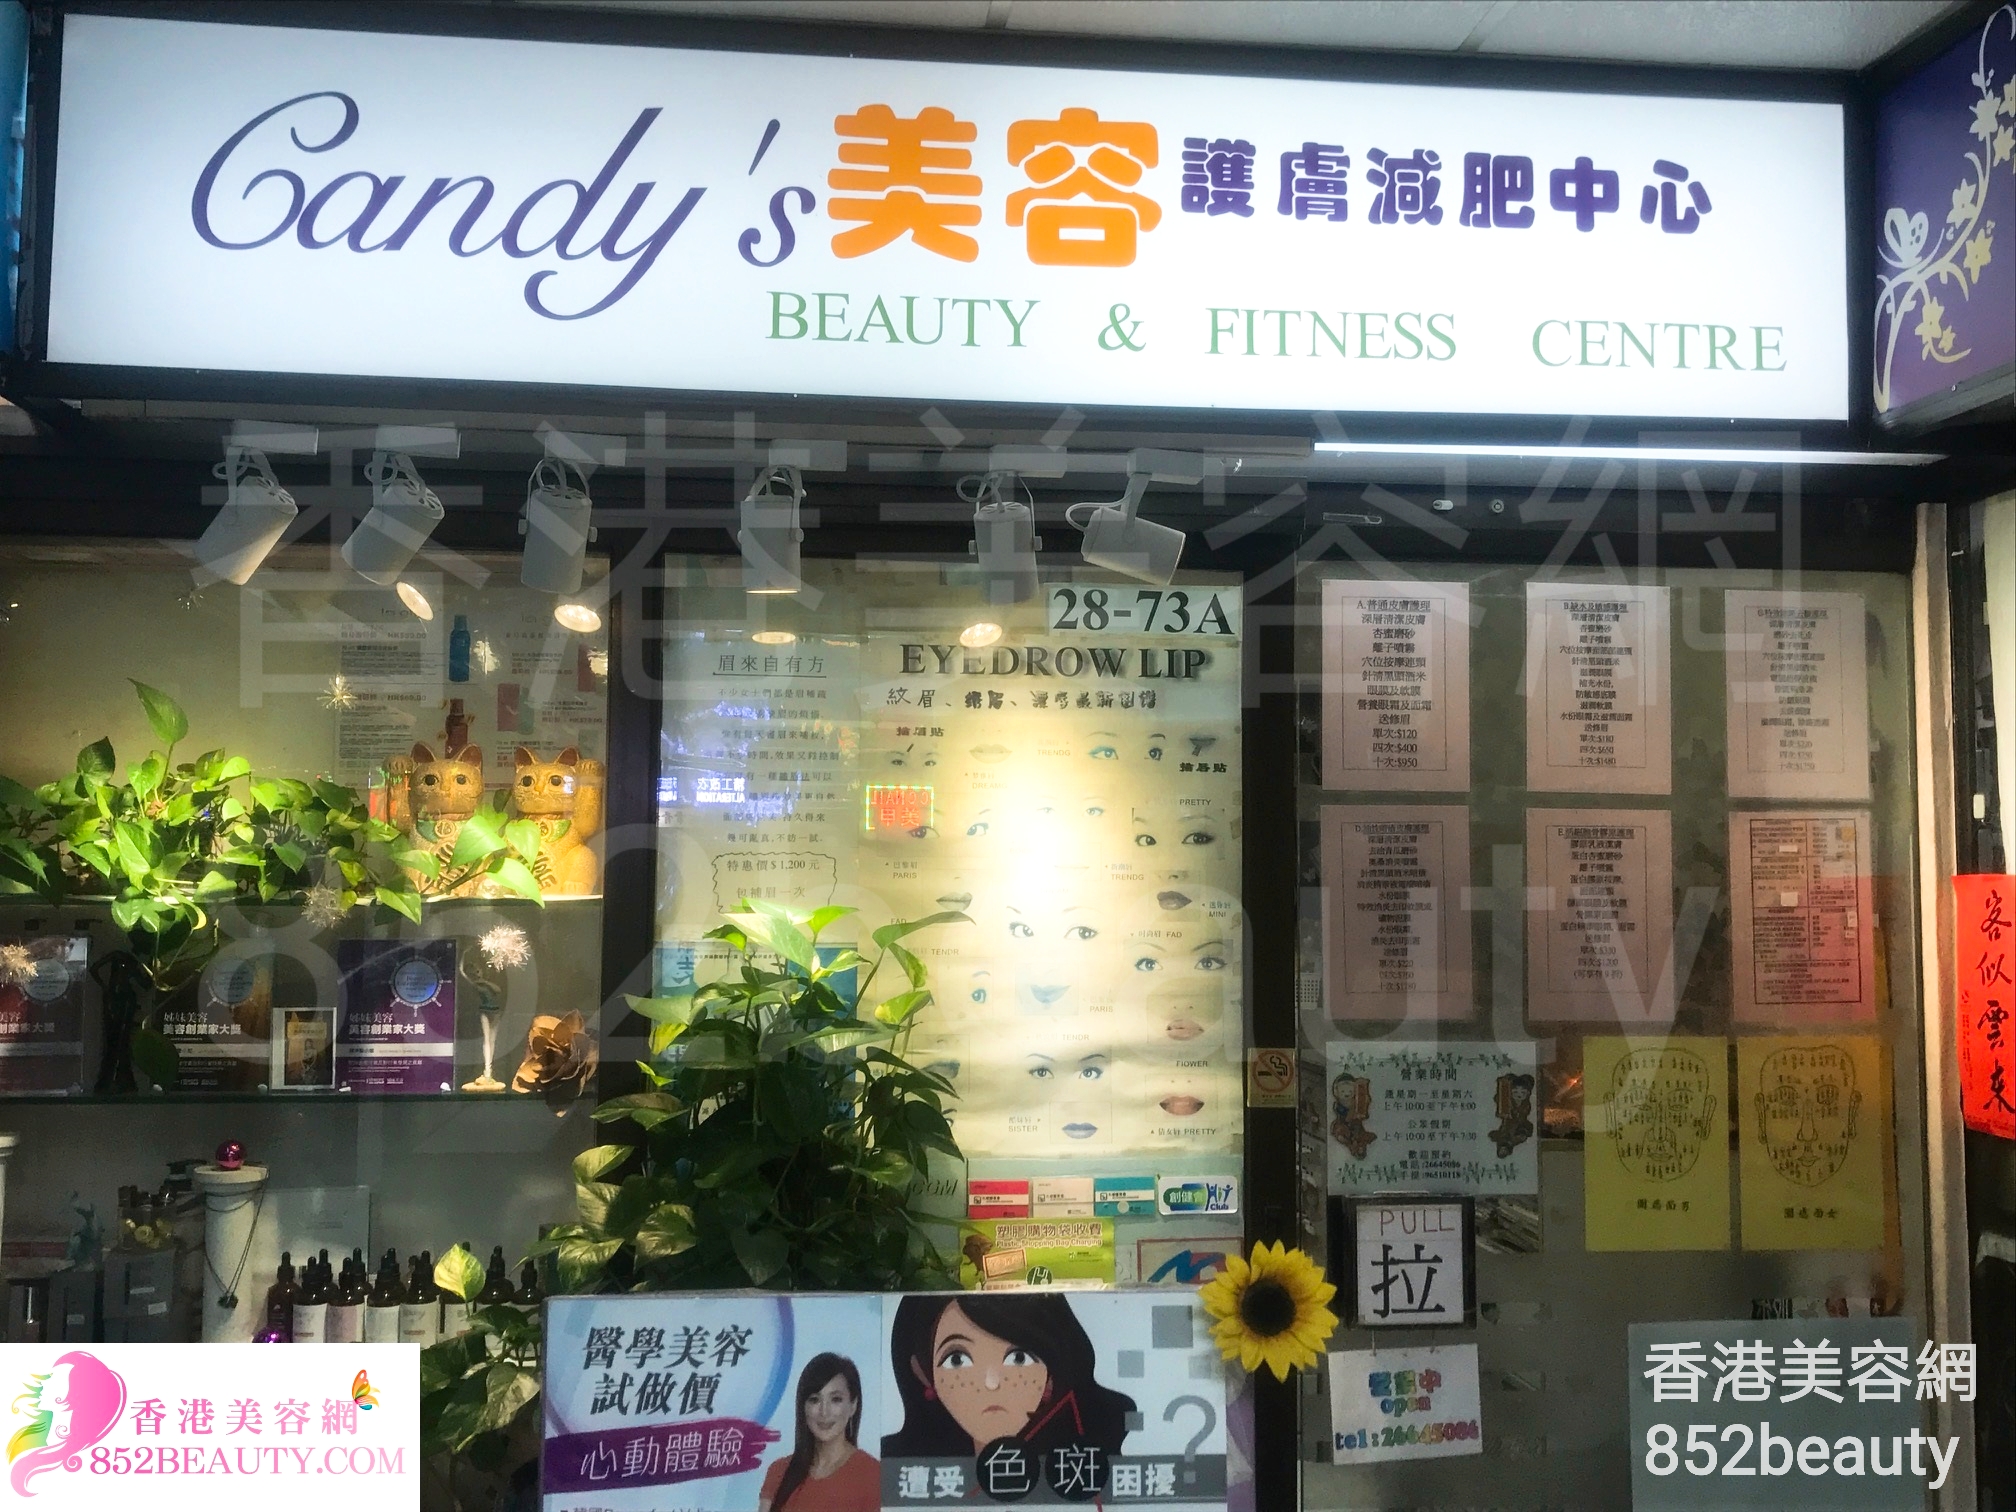 香港美容網 Hong Kong Beauty Salon 美容院 / 美容師: Candy's 美容護膚減肥中心